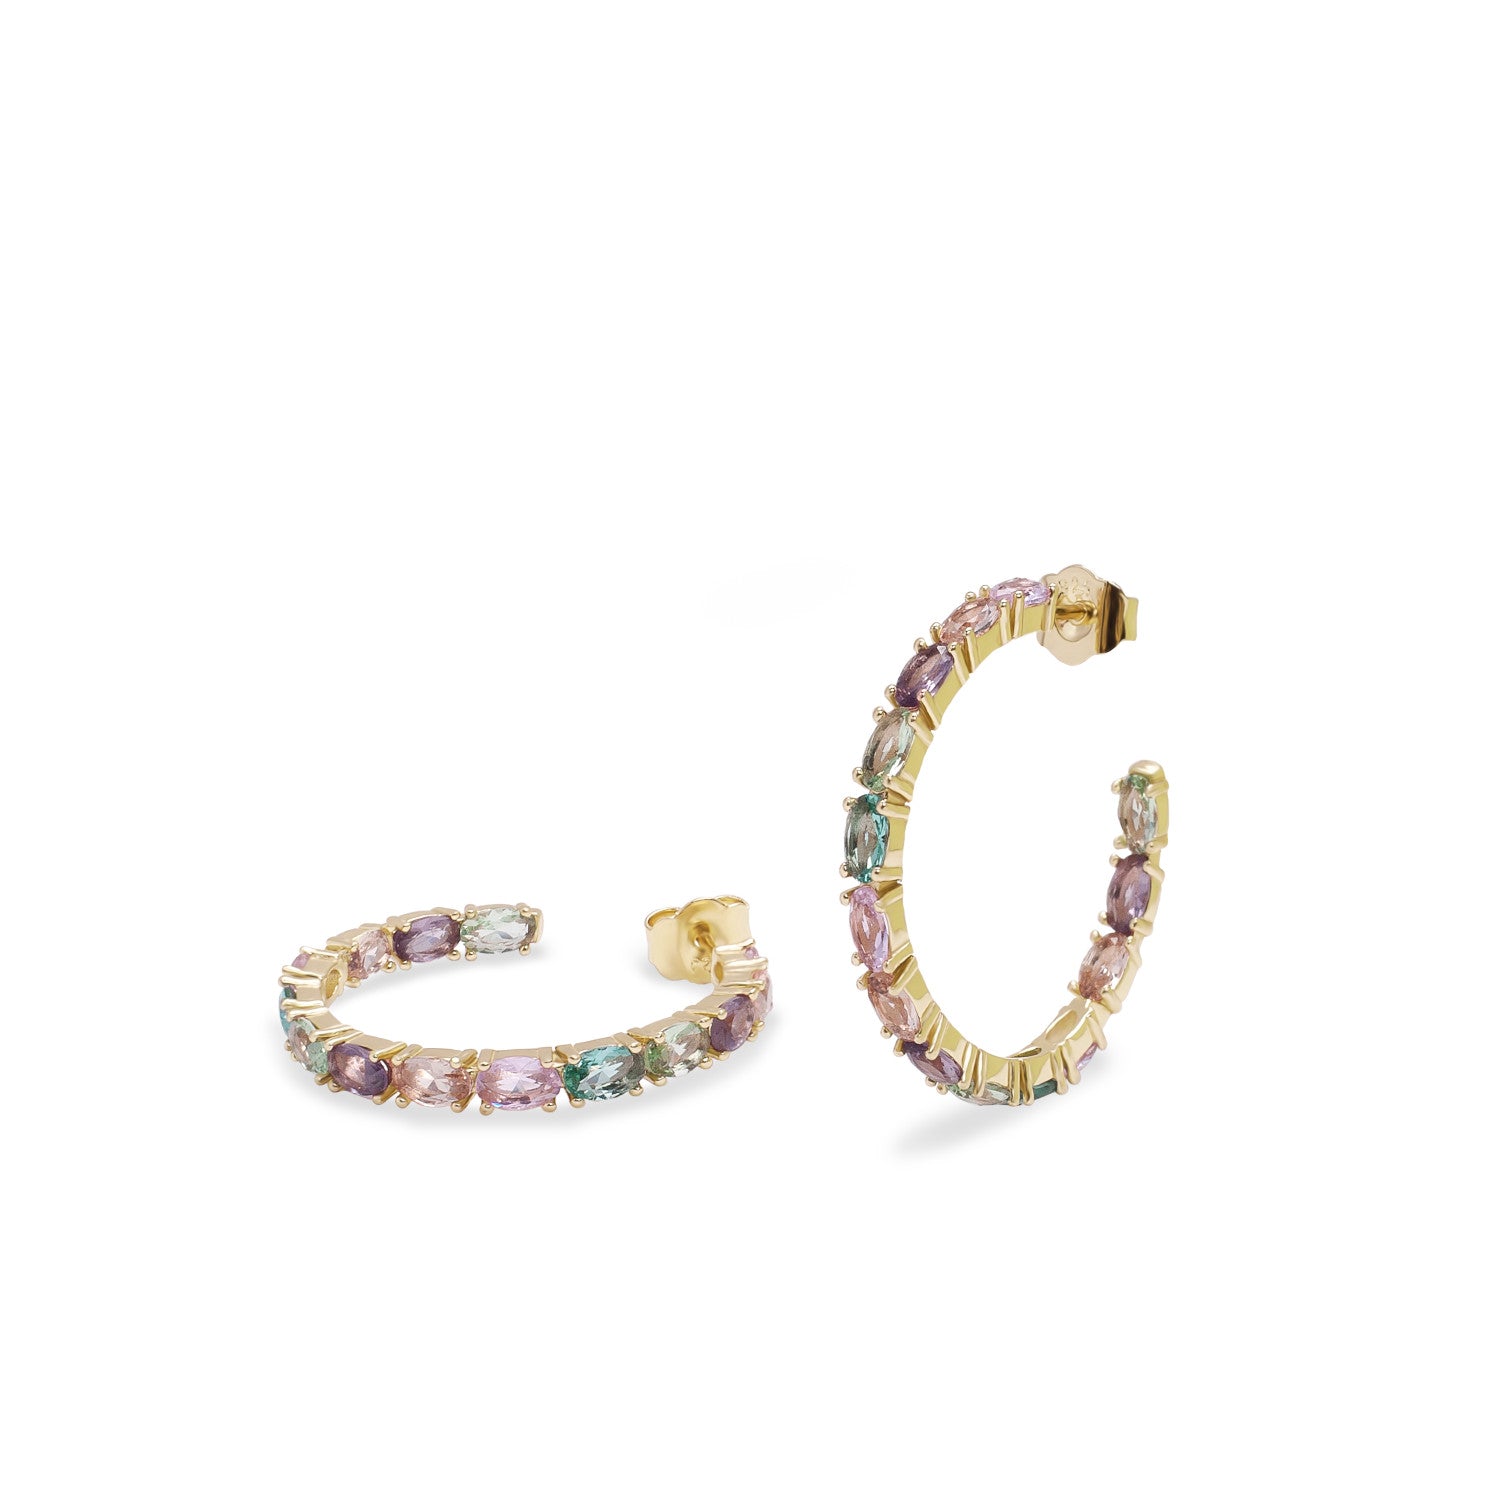 Hoop earrings with oval cut stones in pink tones